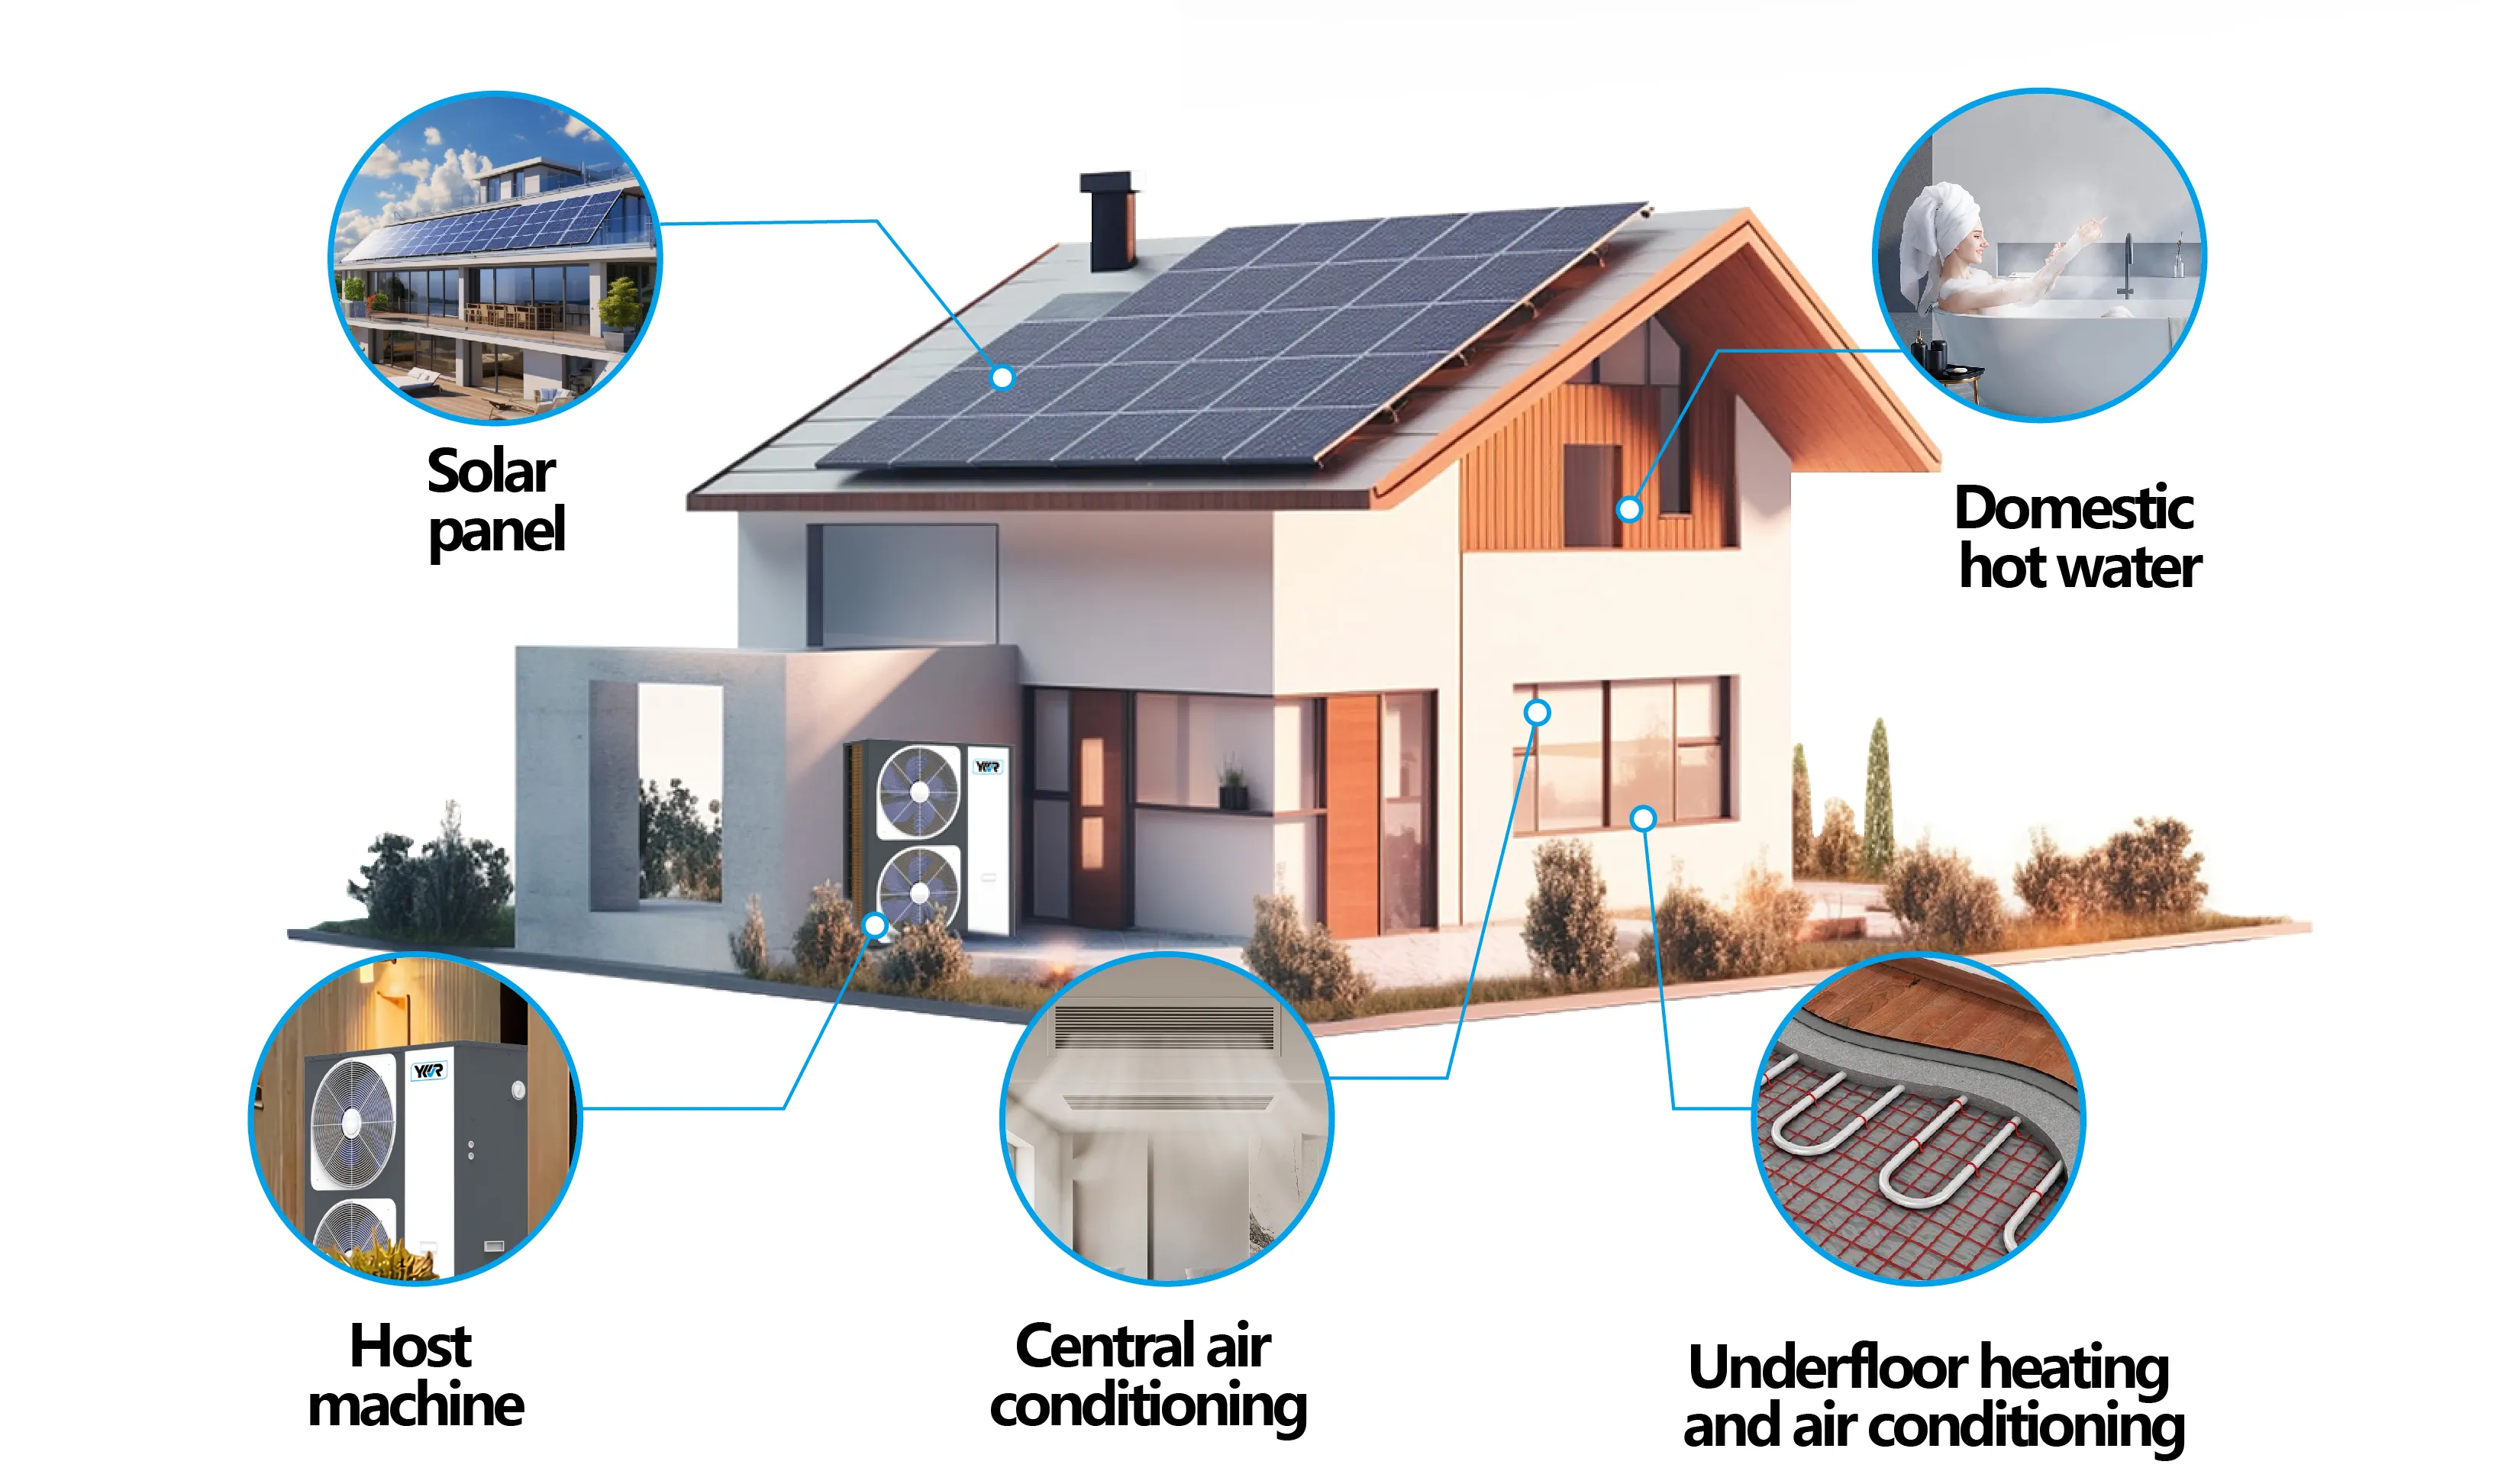 ソーラーヒートポンプ空気水lgソーラーヒーティングシステム住宅暖房および家庭用温水太陽光発電システム